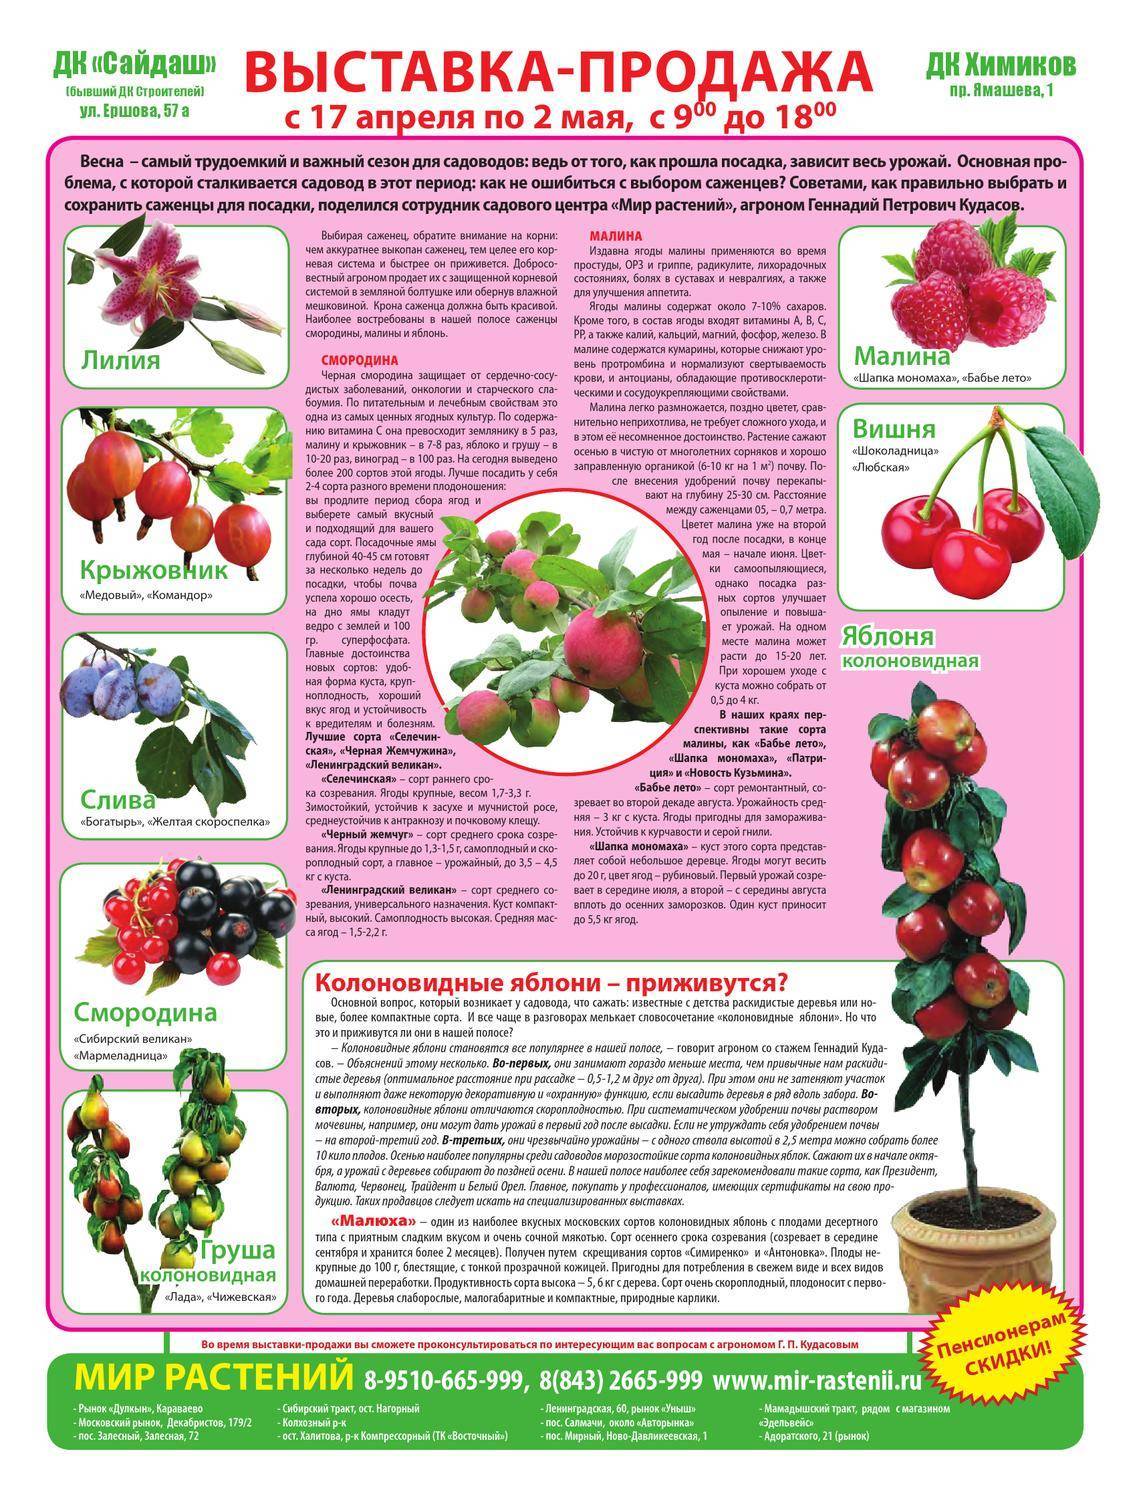 Описание и характеристики самых лучших сортов сладкой вишни, посадка и уход